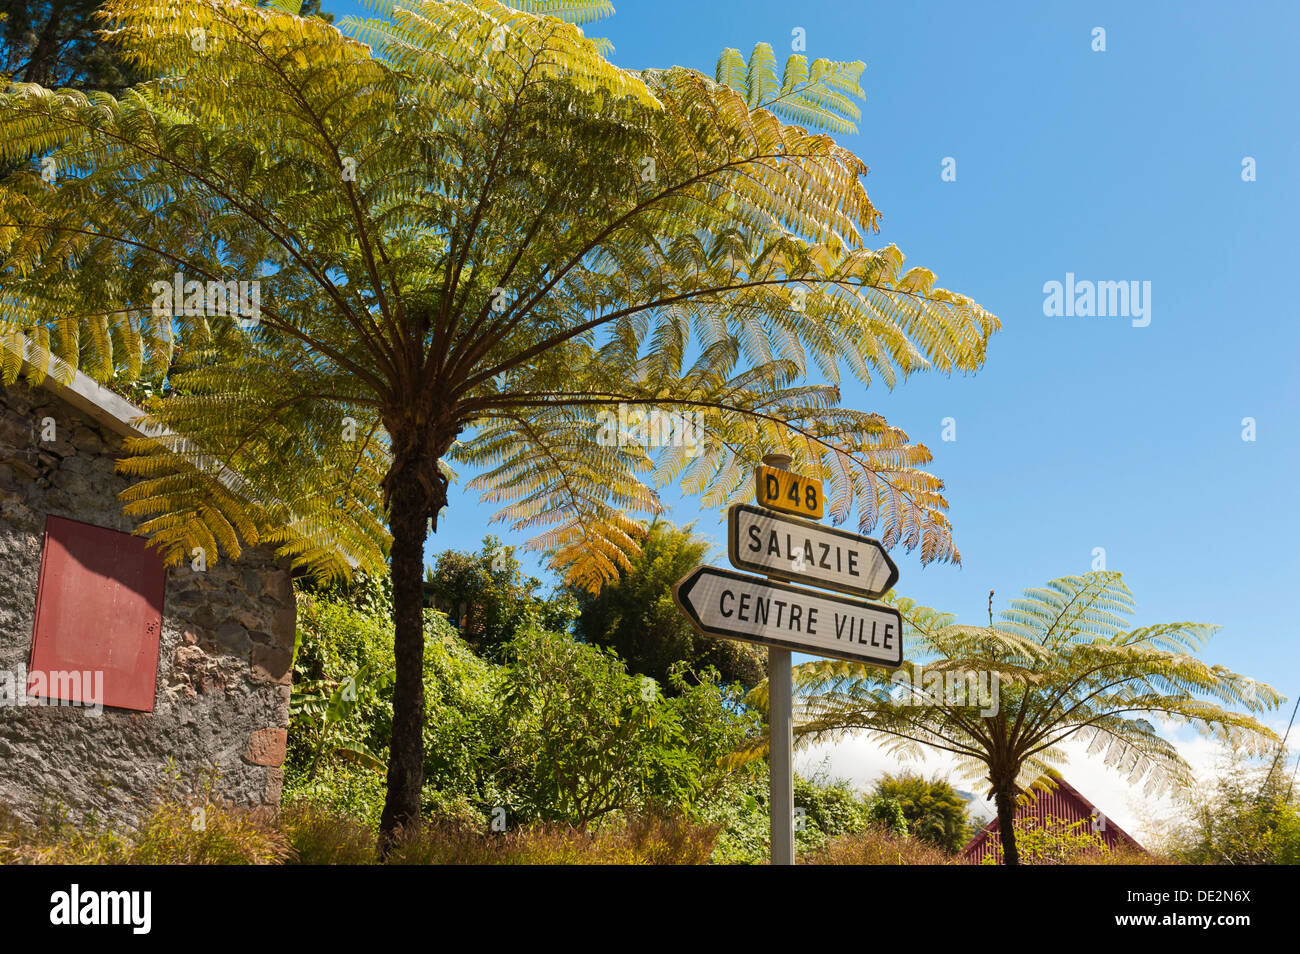 Felci arboree (Cyatheales) e segni di direzione, Hell-Bourg, Salazie, La Réunion, Reunion, Francia Foto Stock